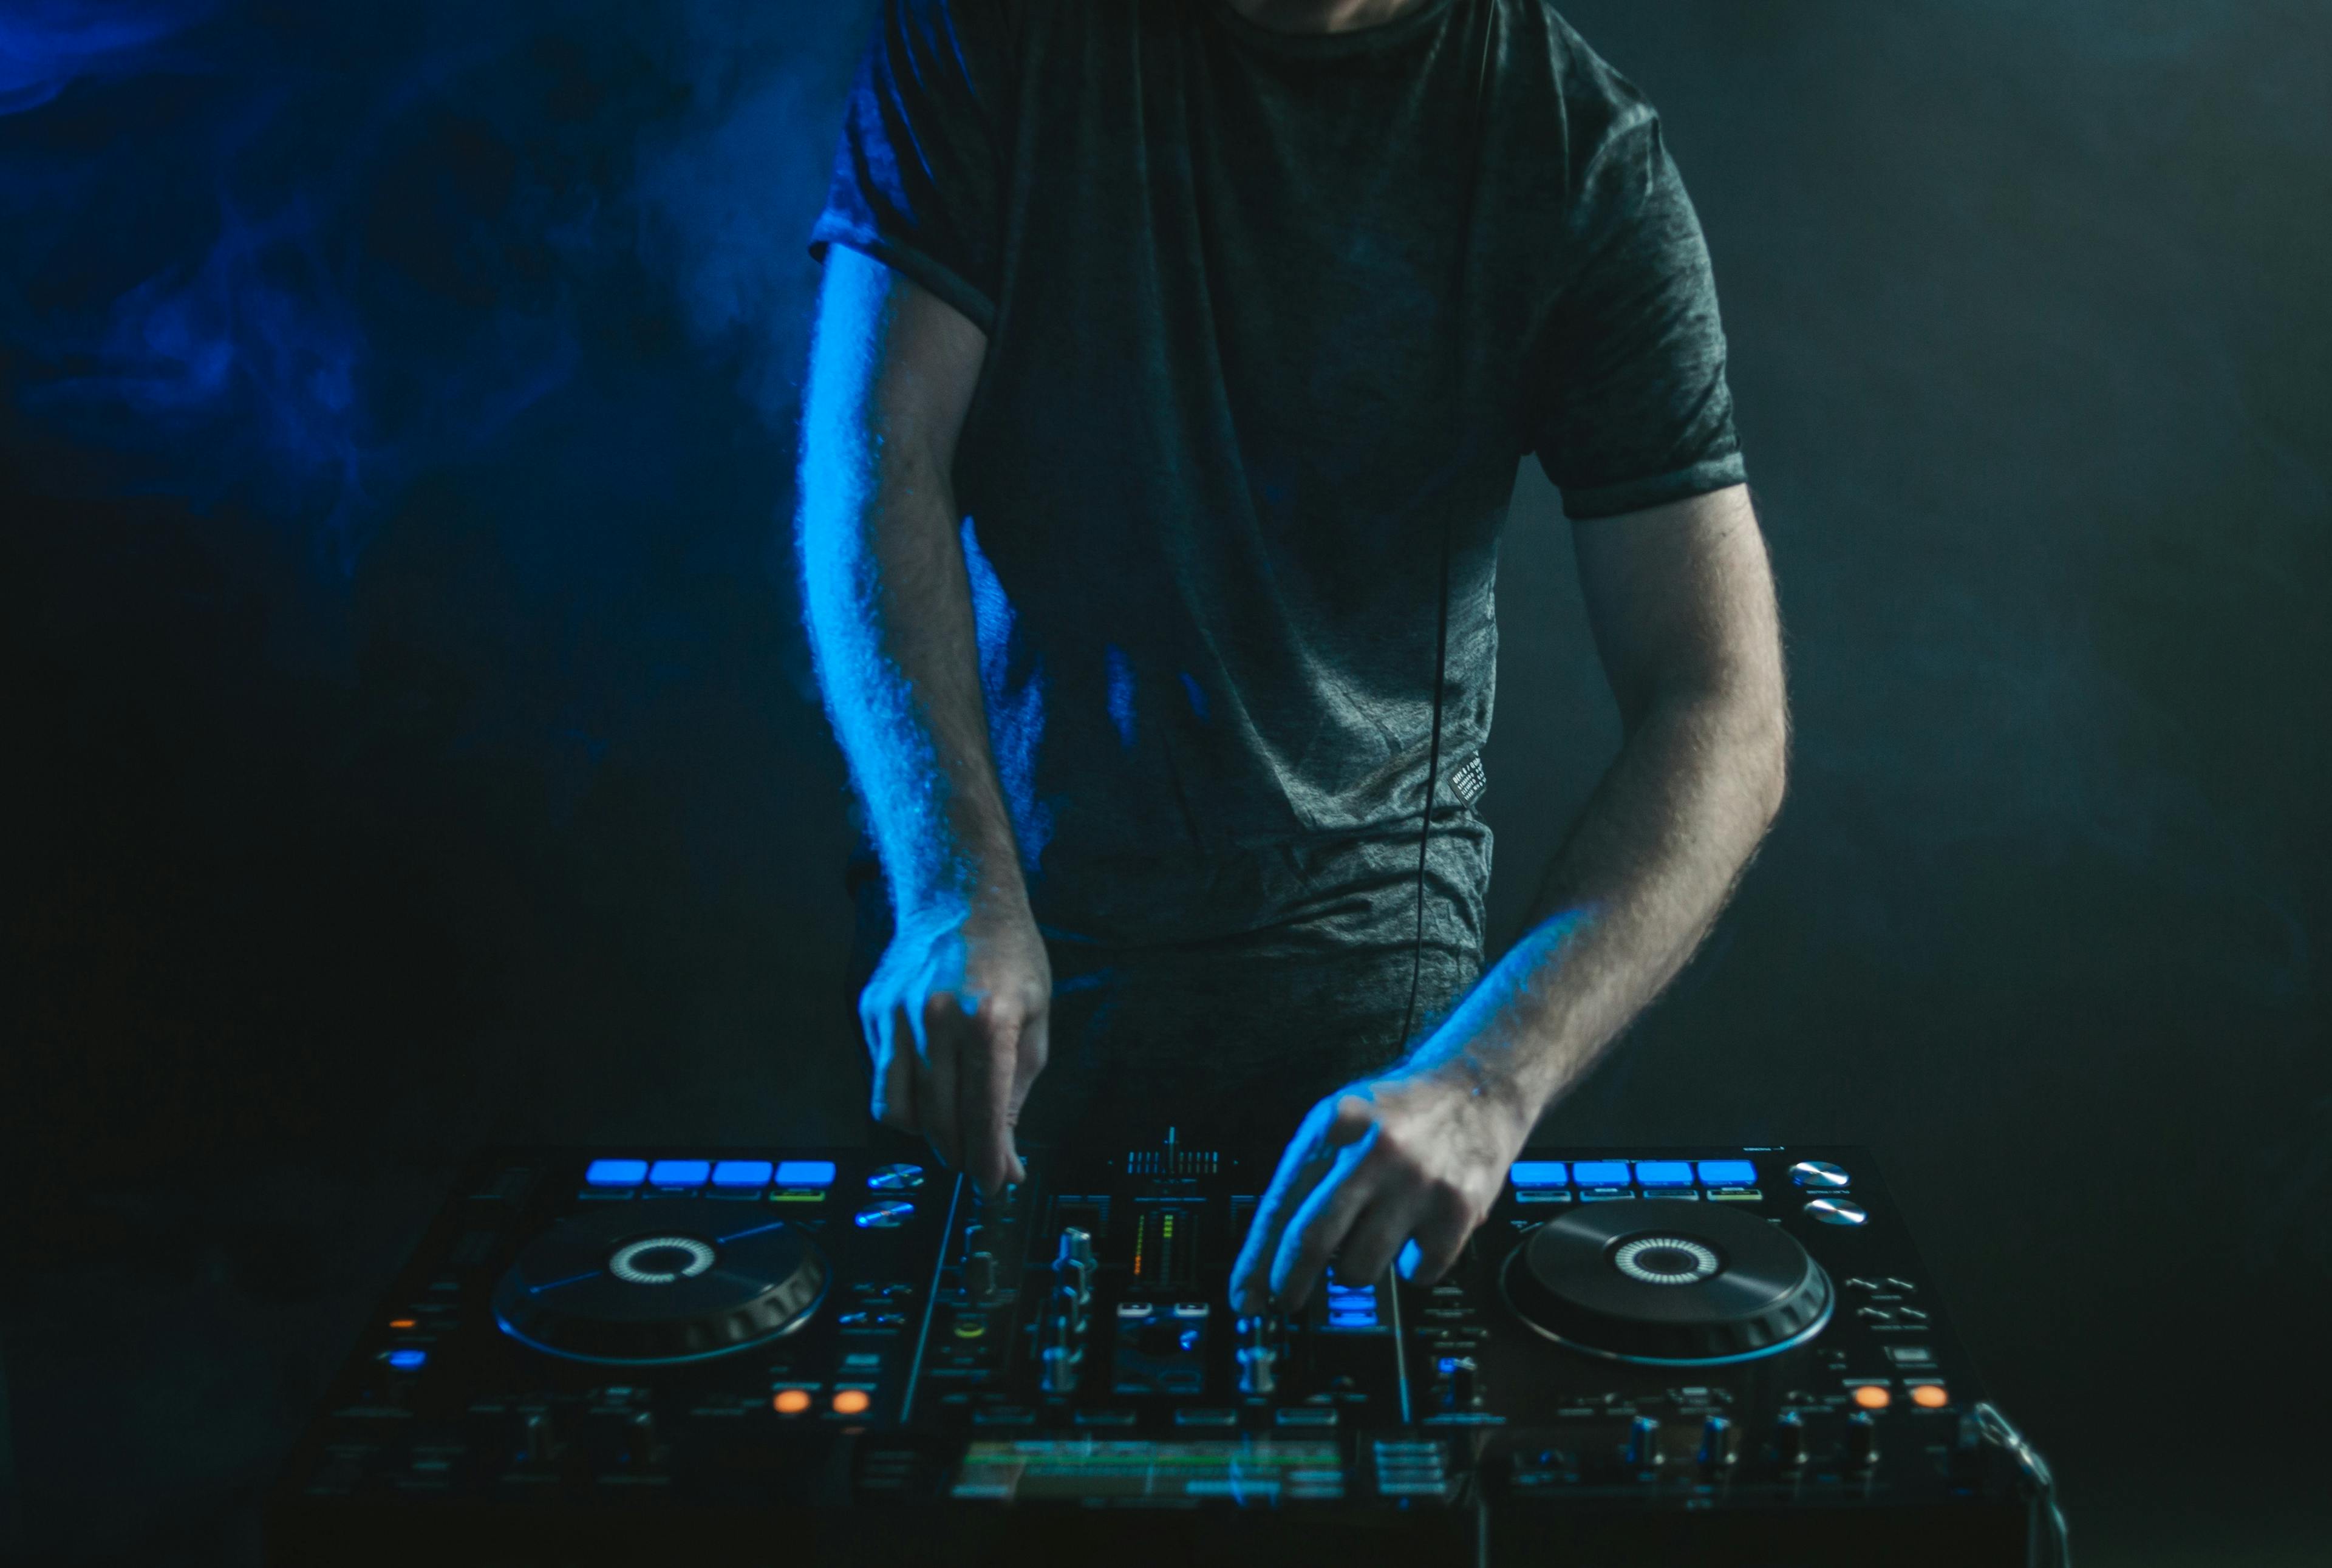 Coverbild von einem DJ mit Lichtern und Rauch